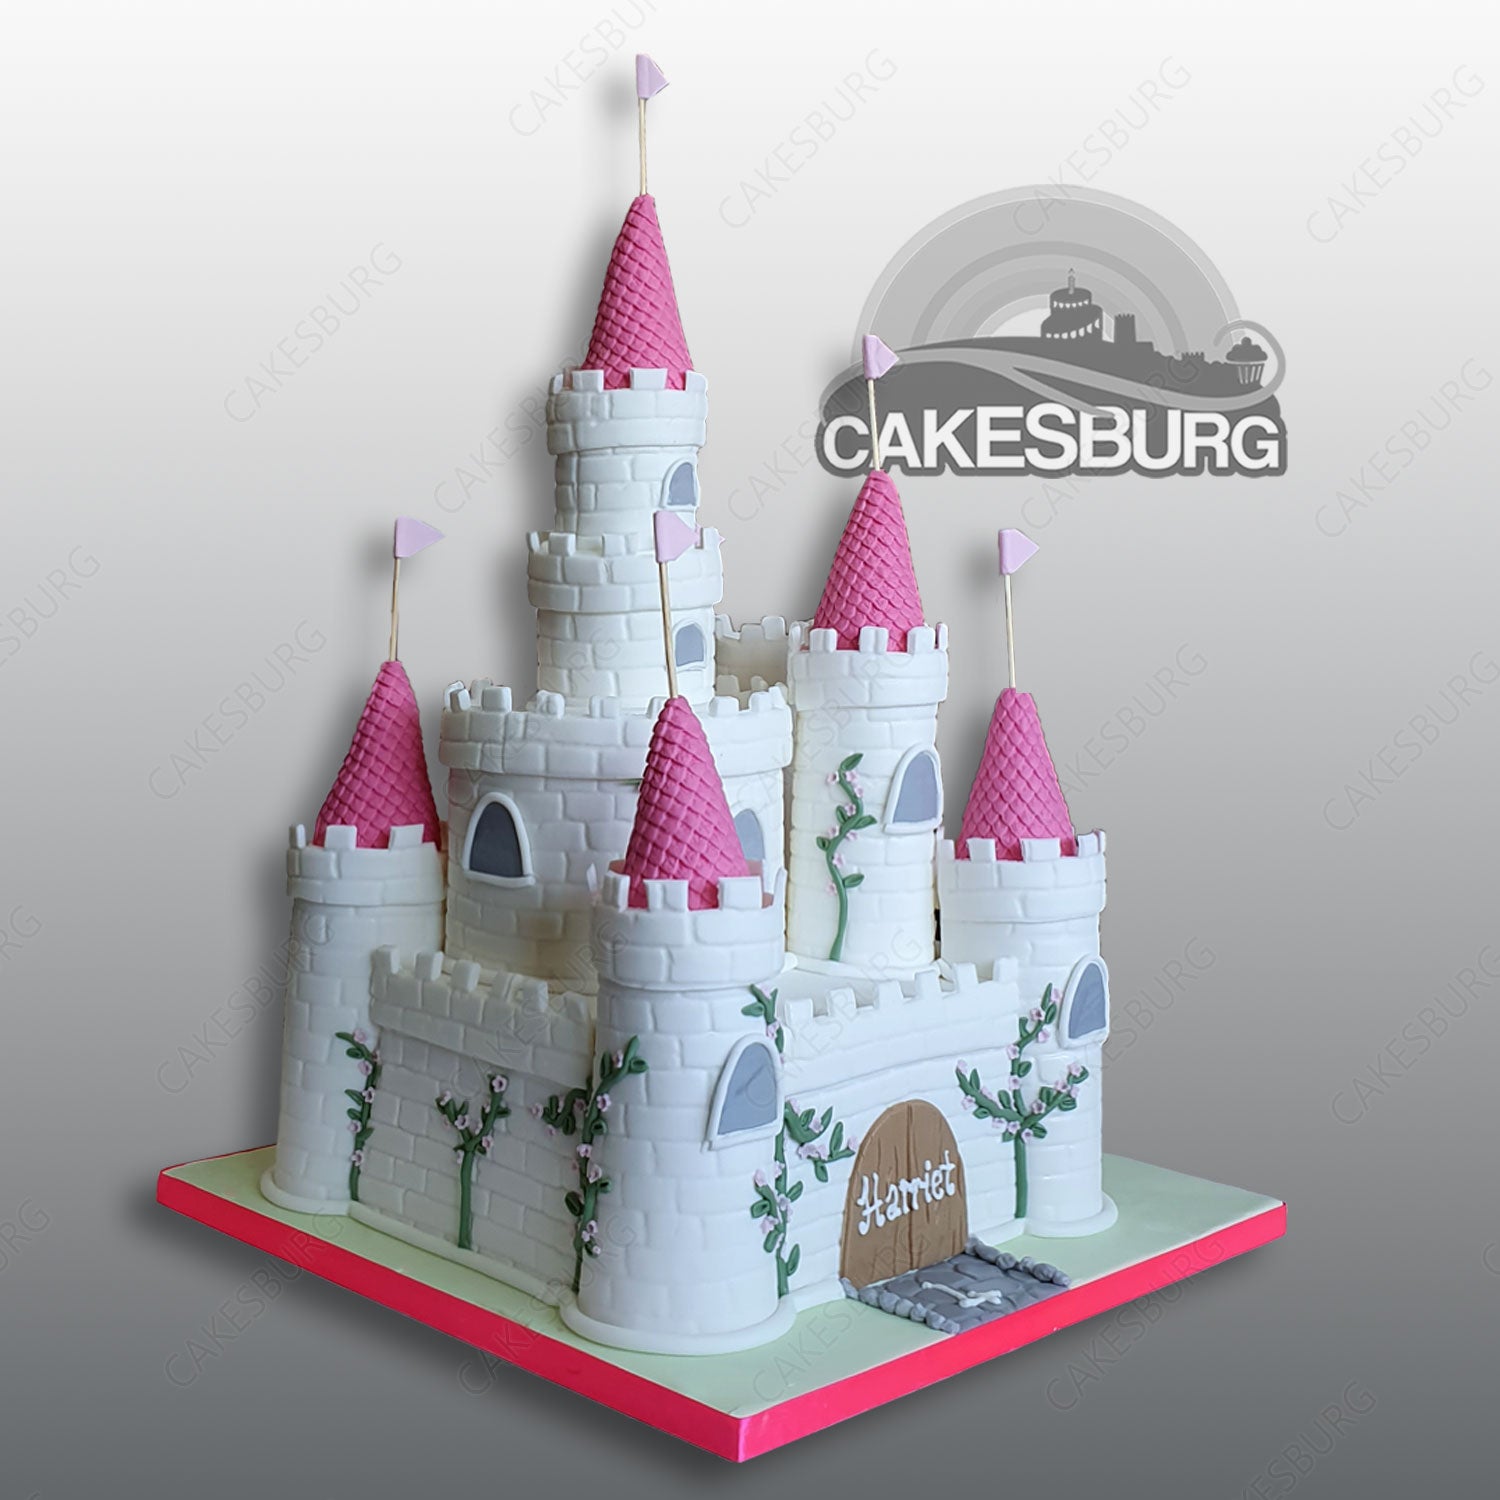 Castle Cake | Disney princess birthday cakes, Princess birthday cake, Castle  birthday cakes